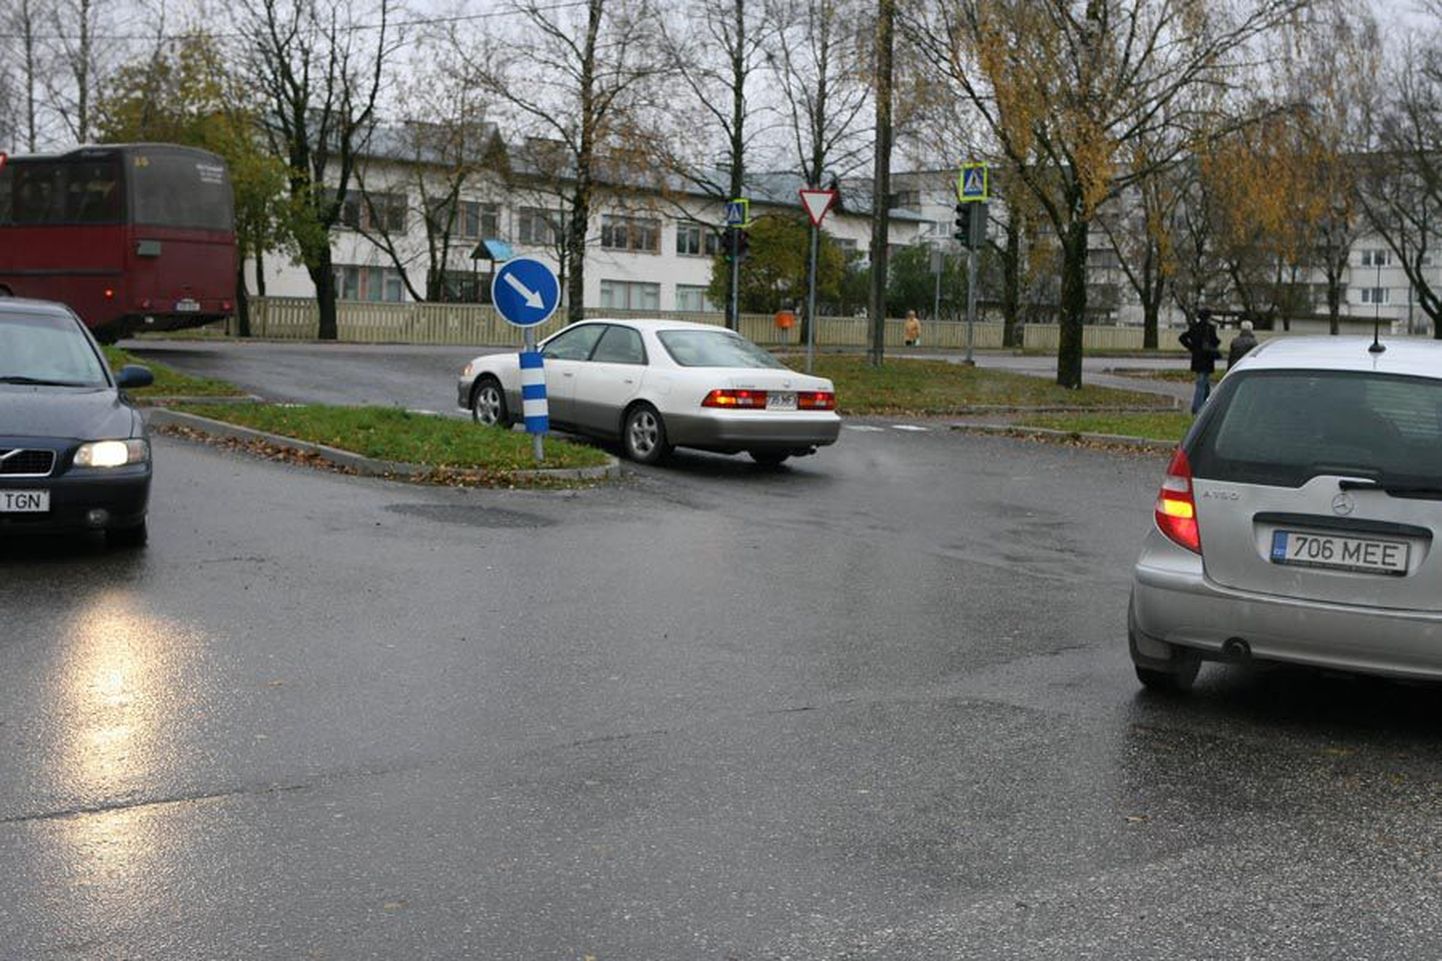 Vaid üksikud autojuhid näitavad Selveri parklast Riia maantee poole pöörates vasakut suunatuld, ehkki liikluseeskiri seda nõuab. Samuti ei näidata suunatuld pärast parklasse jõudmist.